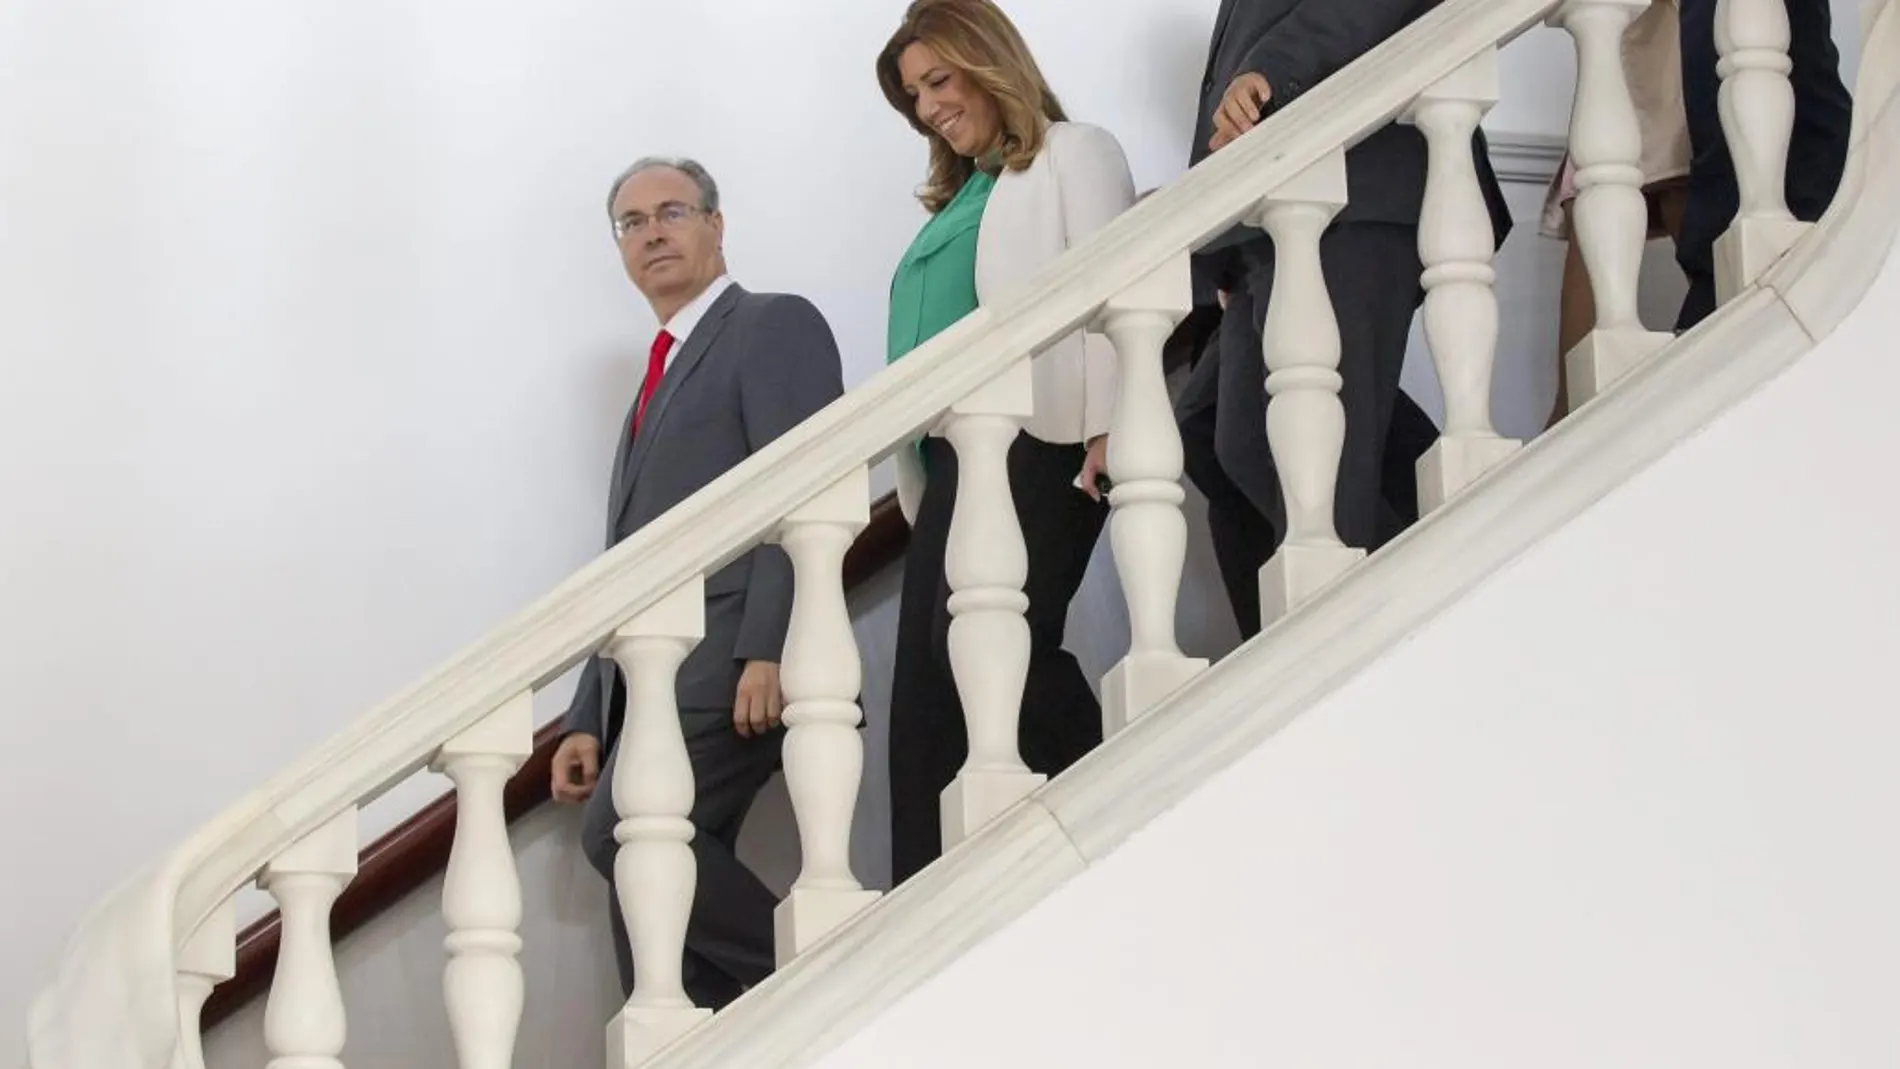 La presidenta de la Junta de Andalucía en funciones, Susana Díaz, y el recién elegido presidente del Parlamento, Juan Pablo Durán (i), en el Parlamento andaluz en Sevilla